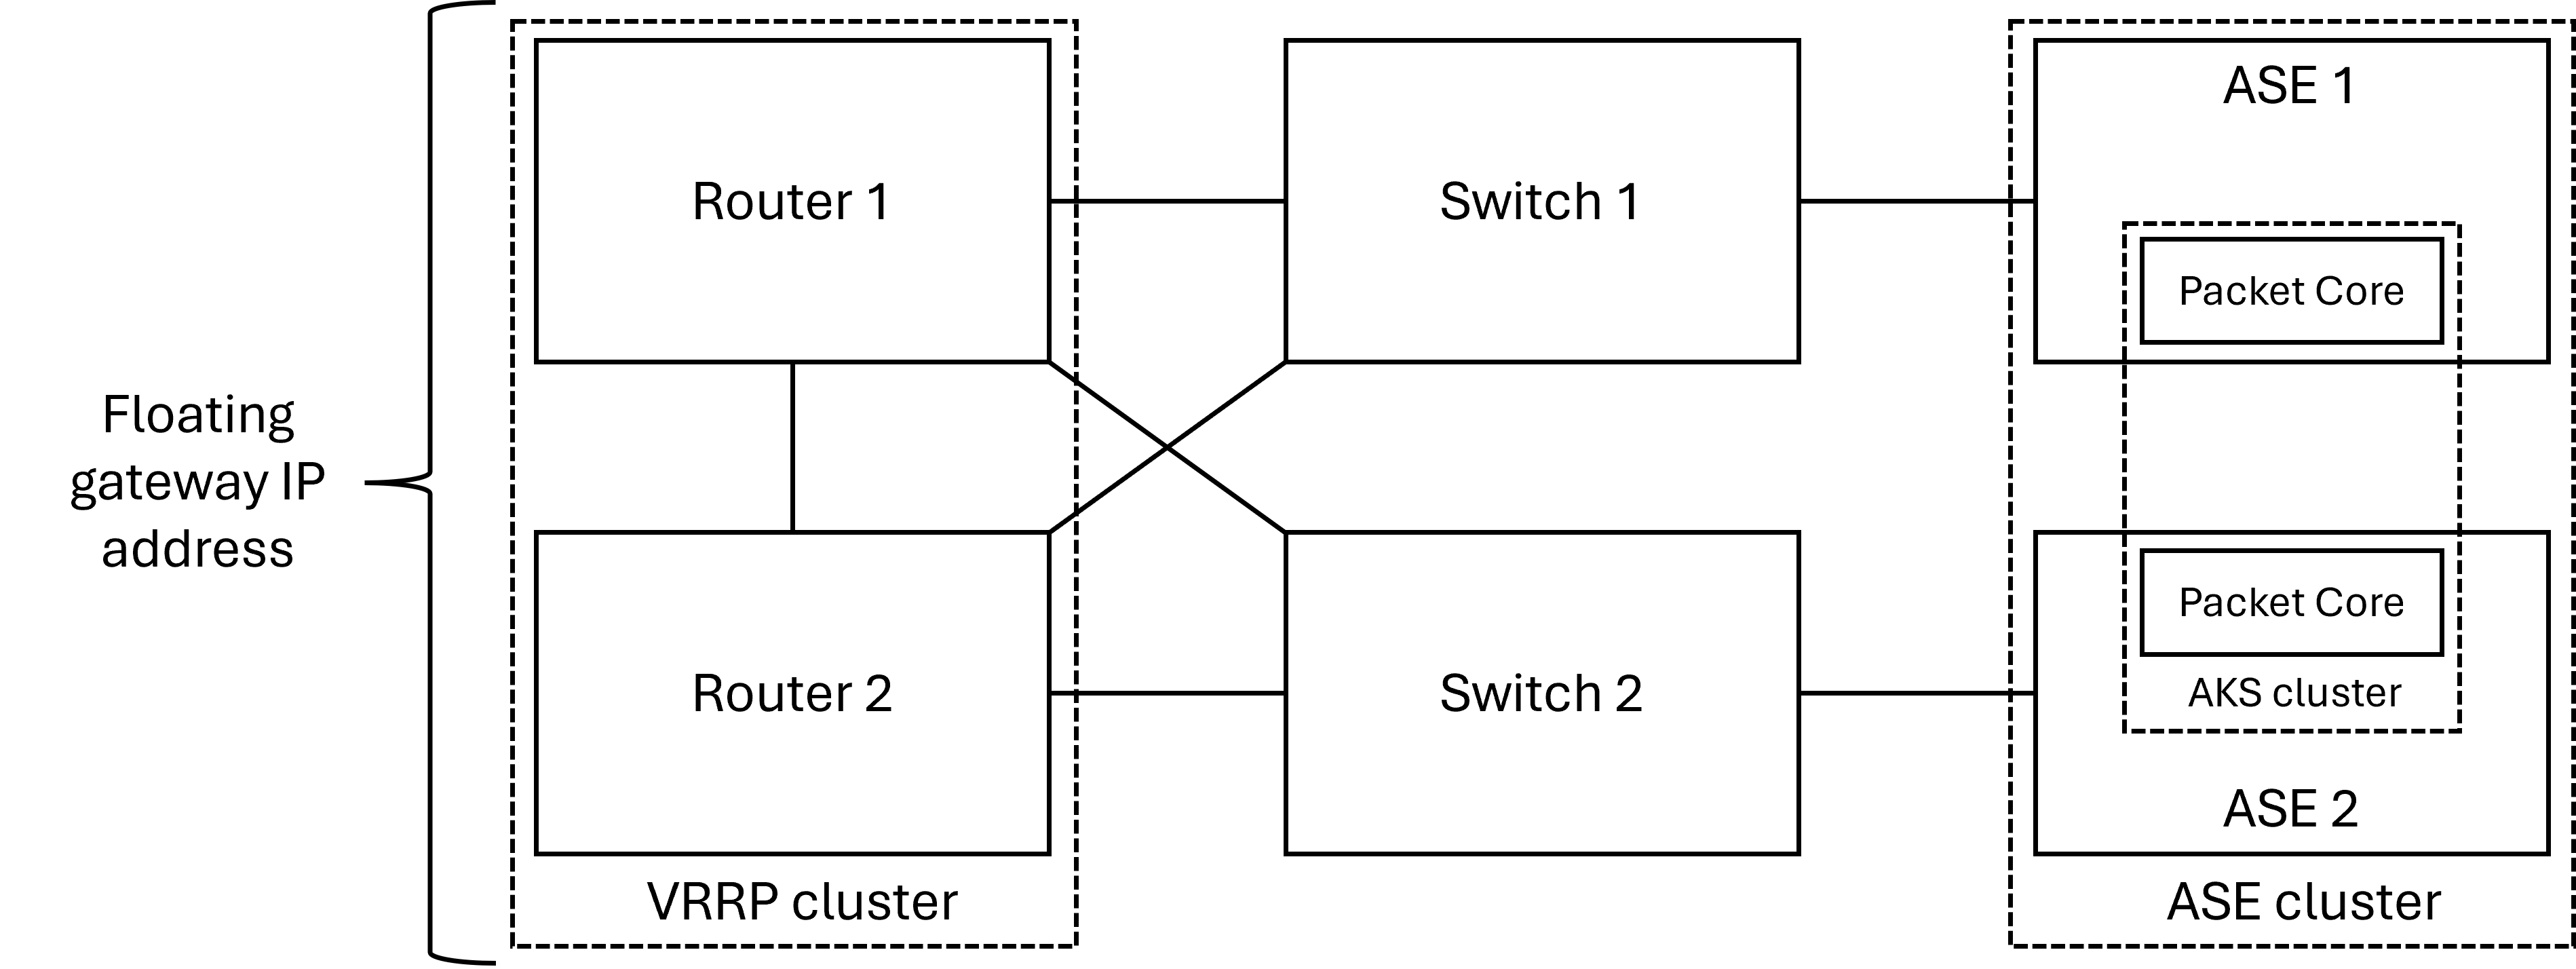 Diagram memperlihatkan tata letak fisik jaringan akses dengan sepasang router yang berlebihan.